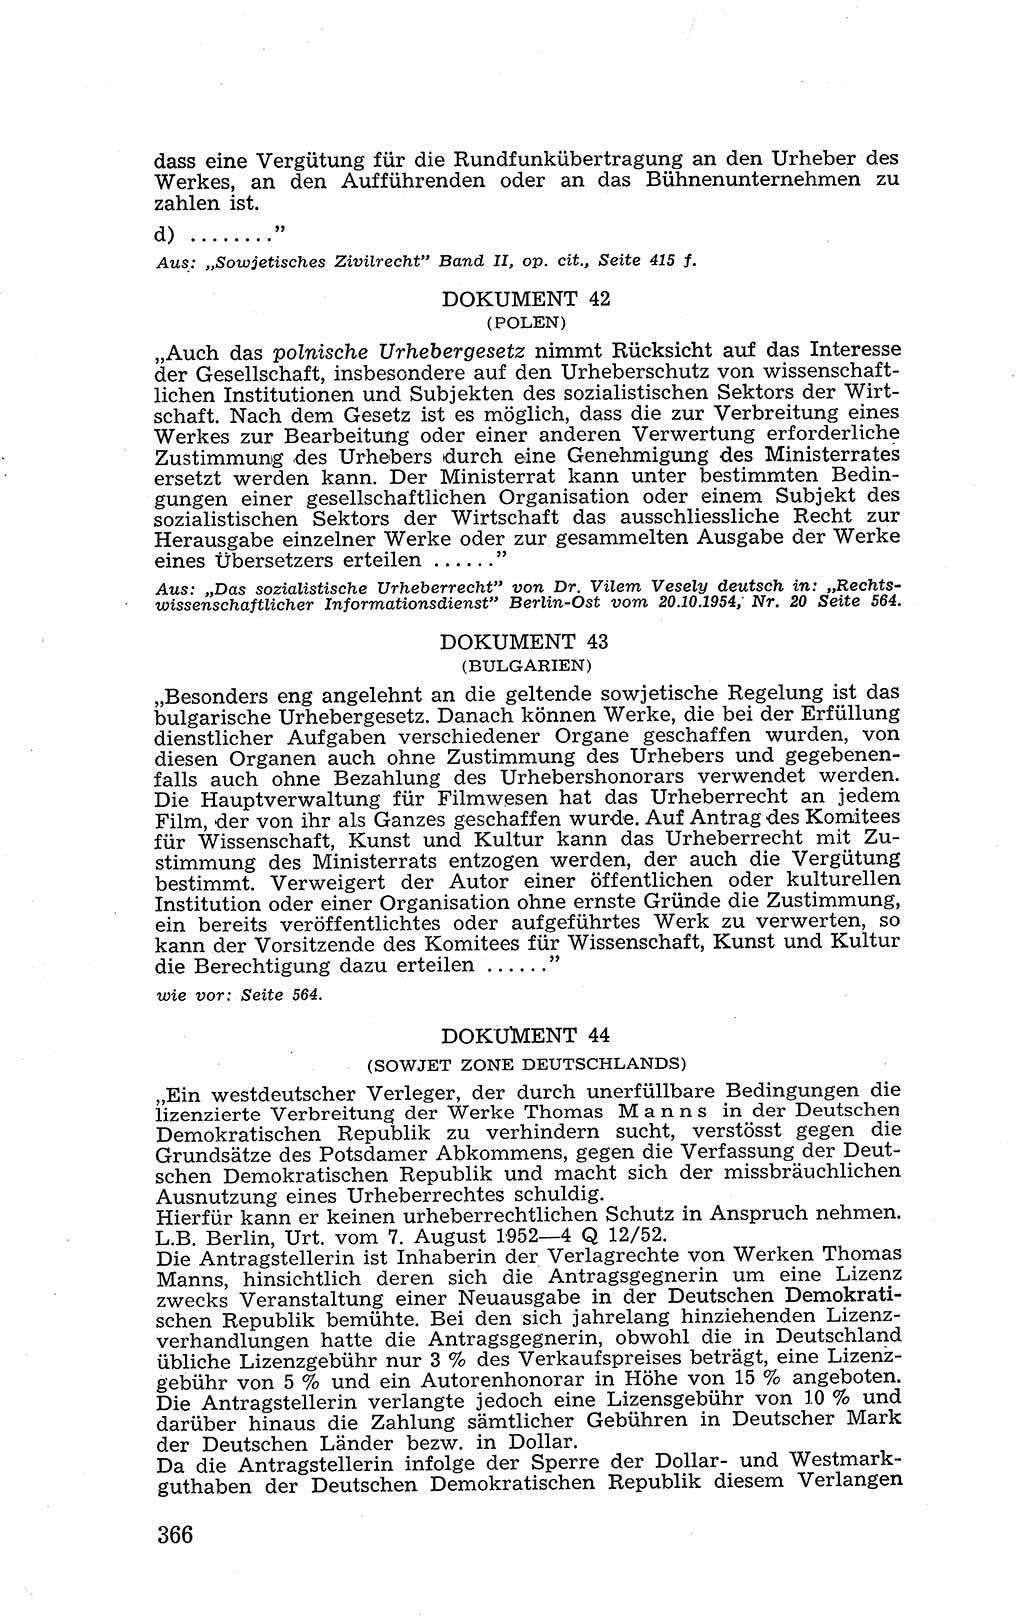 Recht in Fesseln, Dokumente, Internationale Juristen-Kommission [Bundesrepublik Deutschland (BRD)] 1955, Seite 366 (R. Dok. IJK BRD 1955, S. 366)